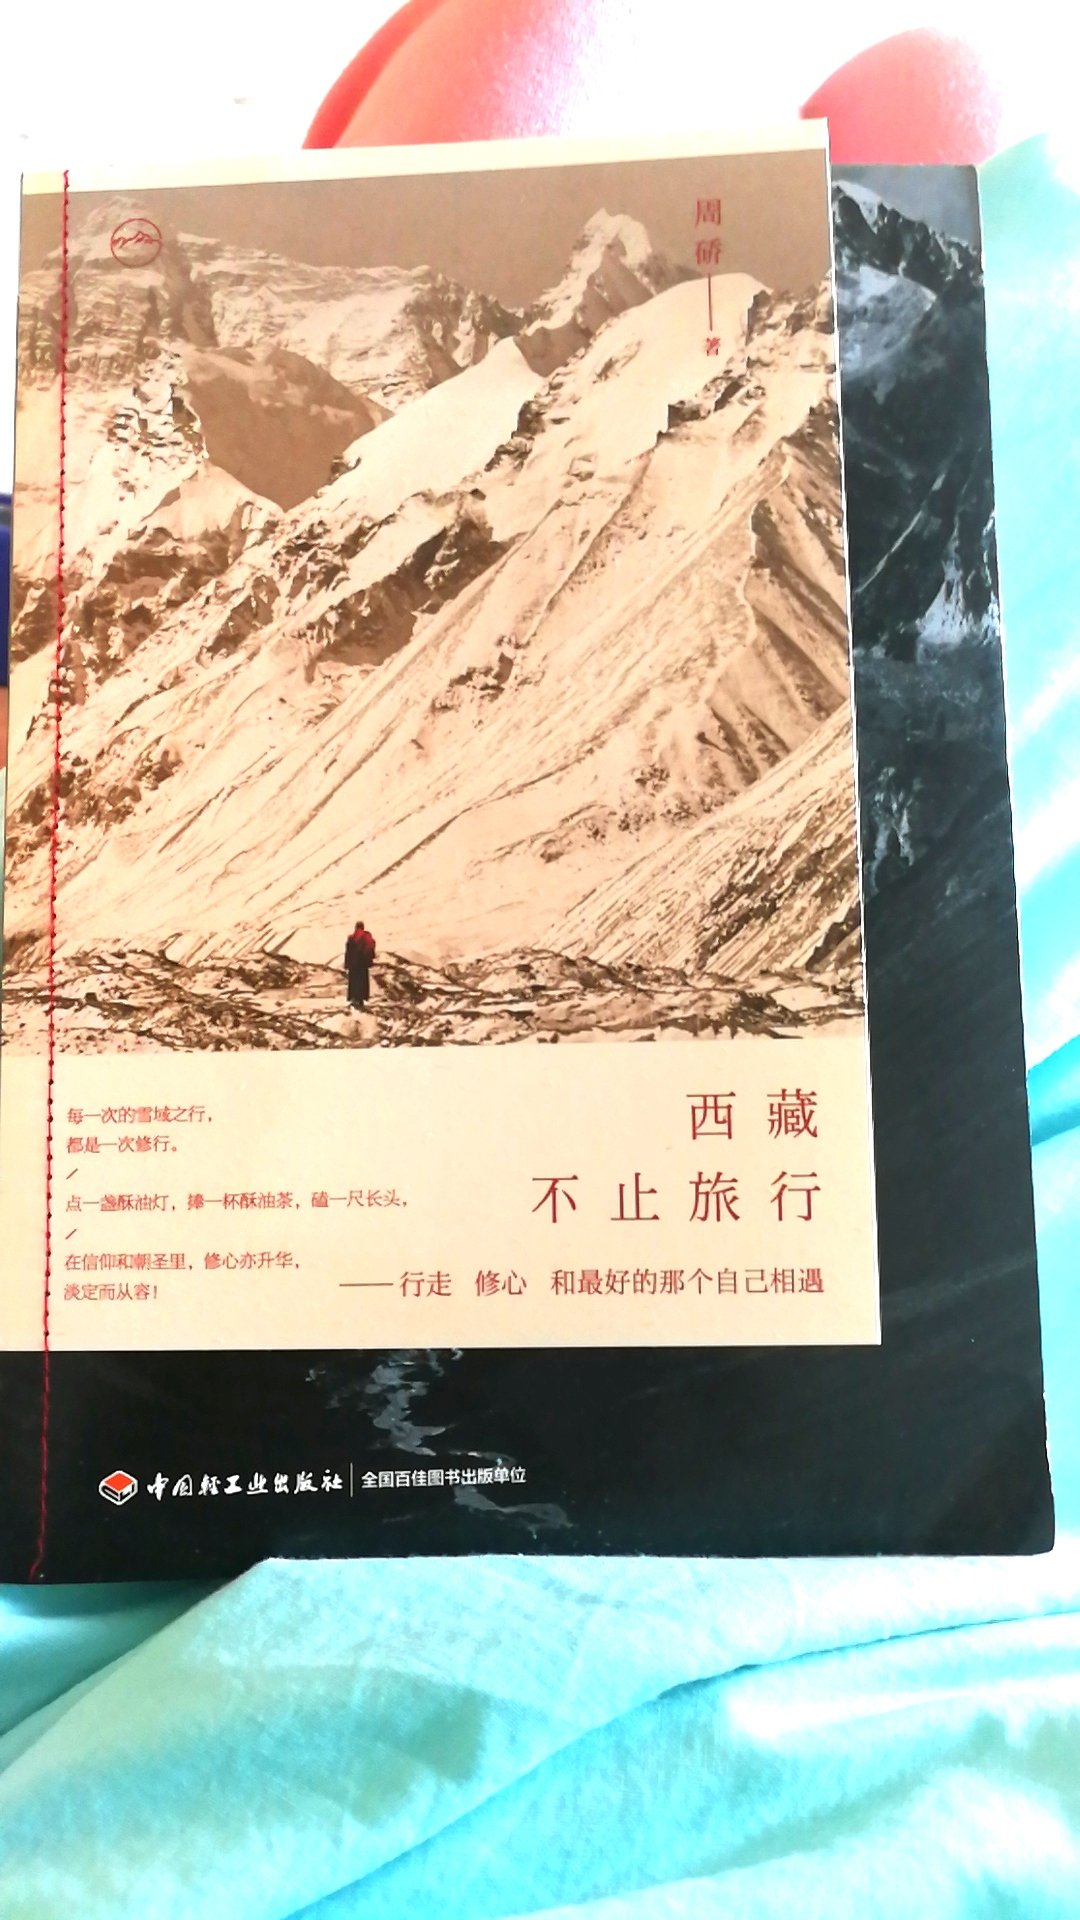 很喜欢，是我看过的关于西藏的最好的书